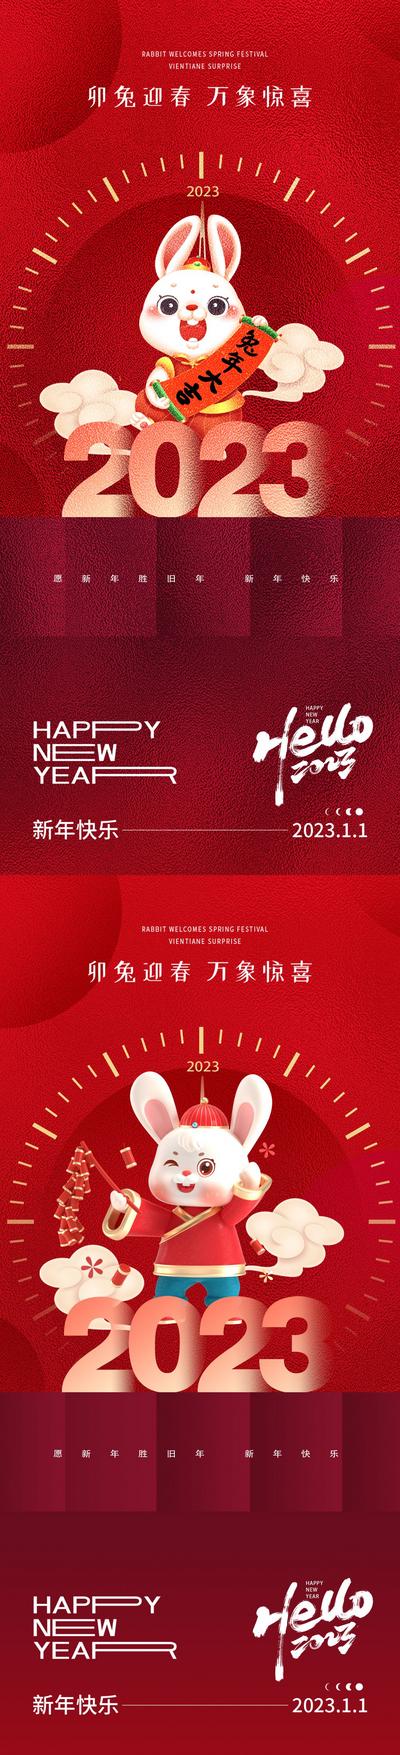 【南门网】海报 公历节日 元旦节 兔年 新年 2023 兔子